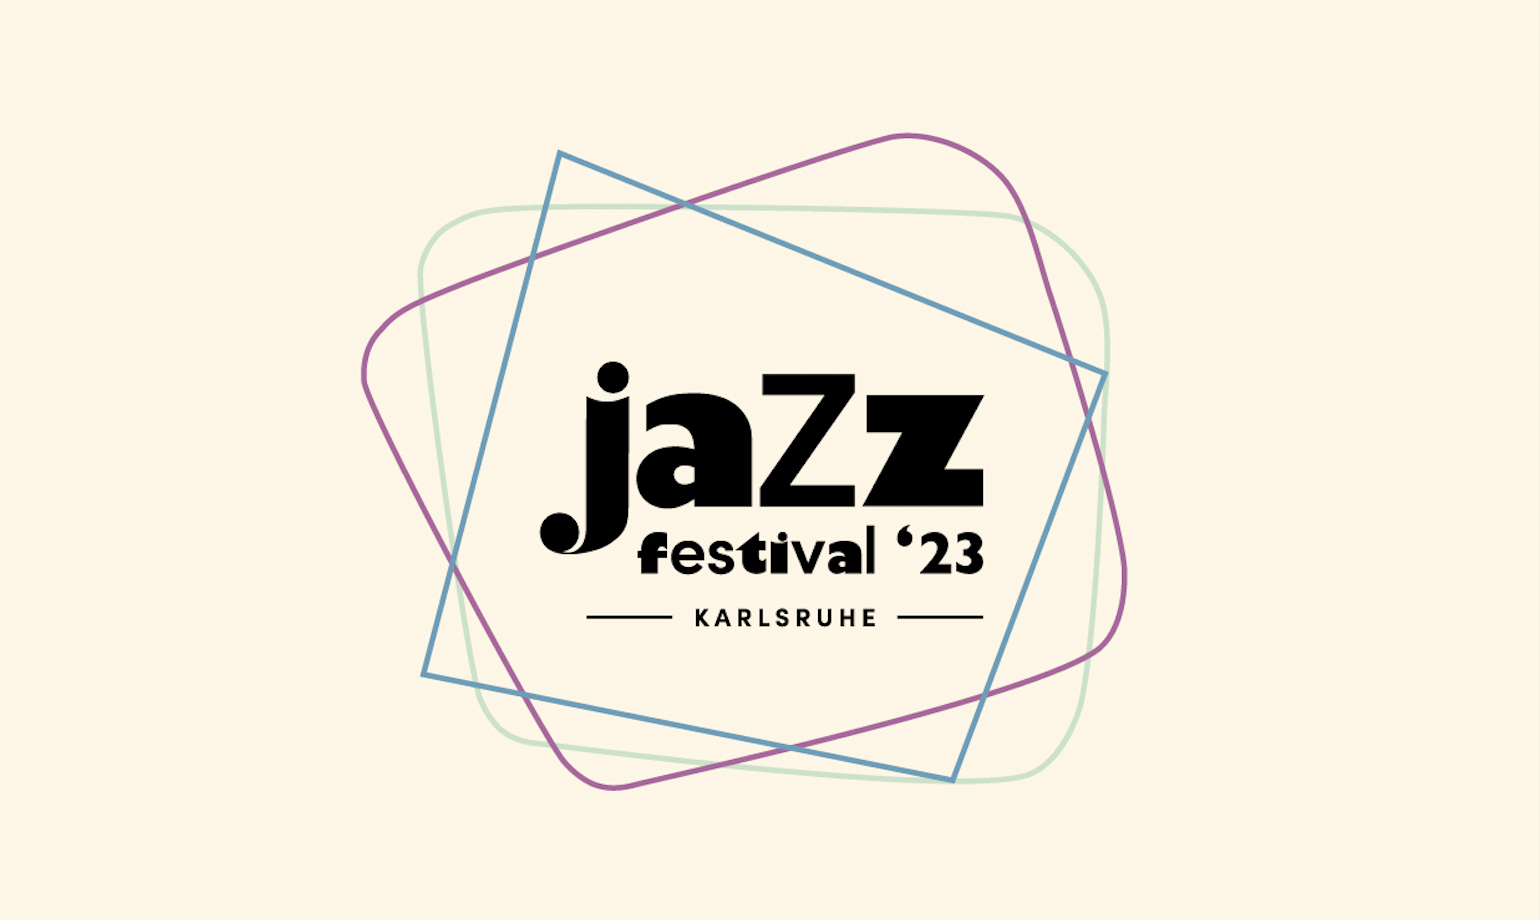 Drei bunte Rahmen auf mandelbraunem Hintergrund, in ihrer Mitte steht in zackigen Buchstaben »jazz festival '23 Karlsruhe«.